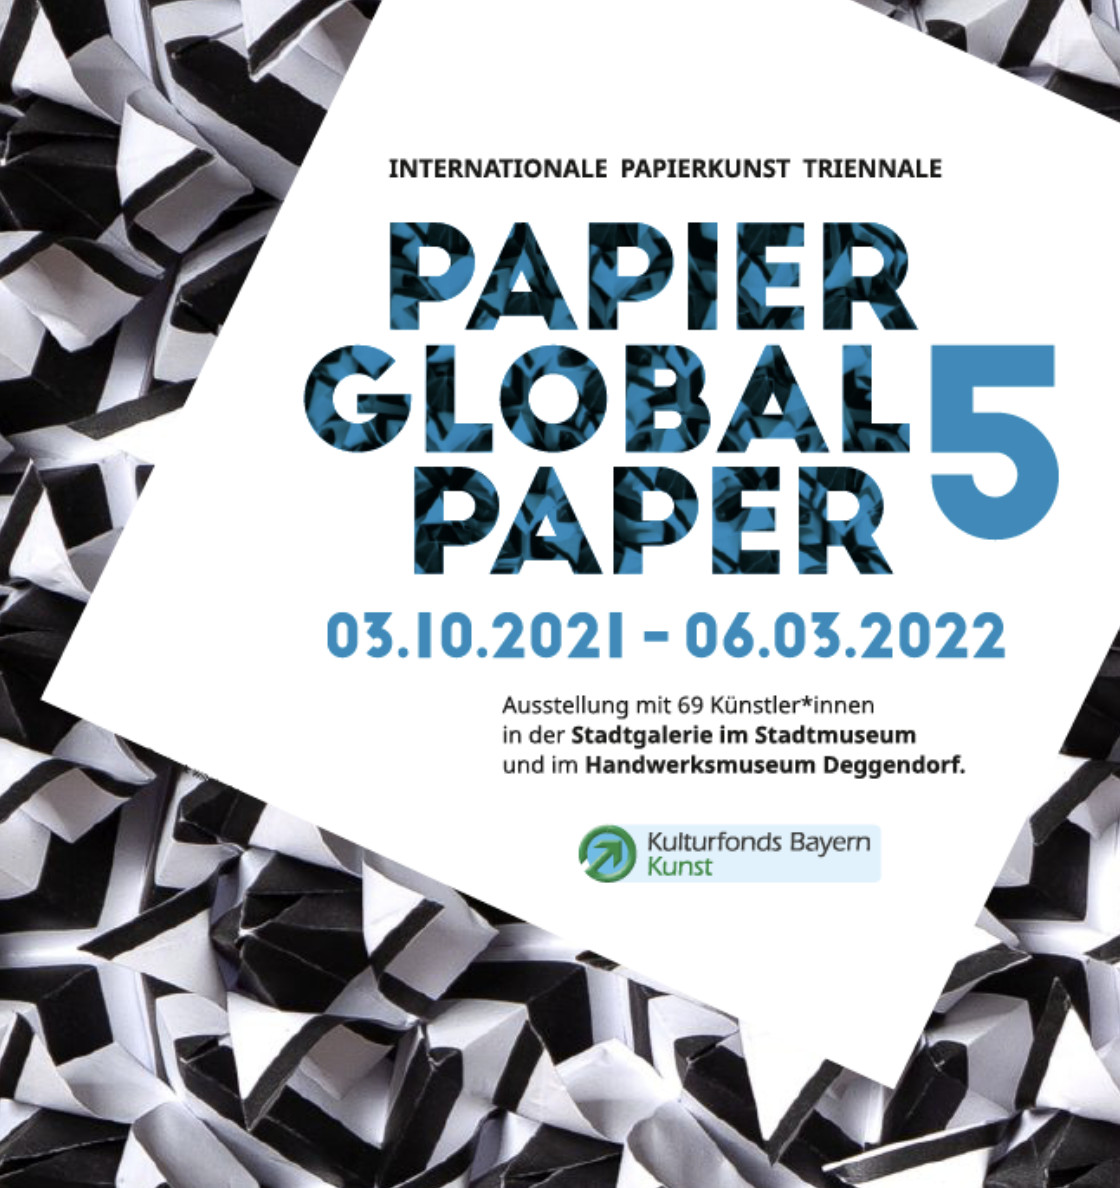 Ausstellung Papier Global Paper 5 Deggendorf